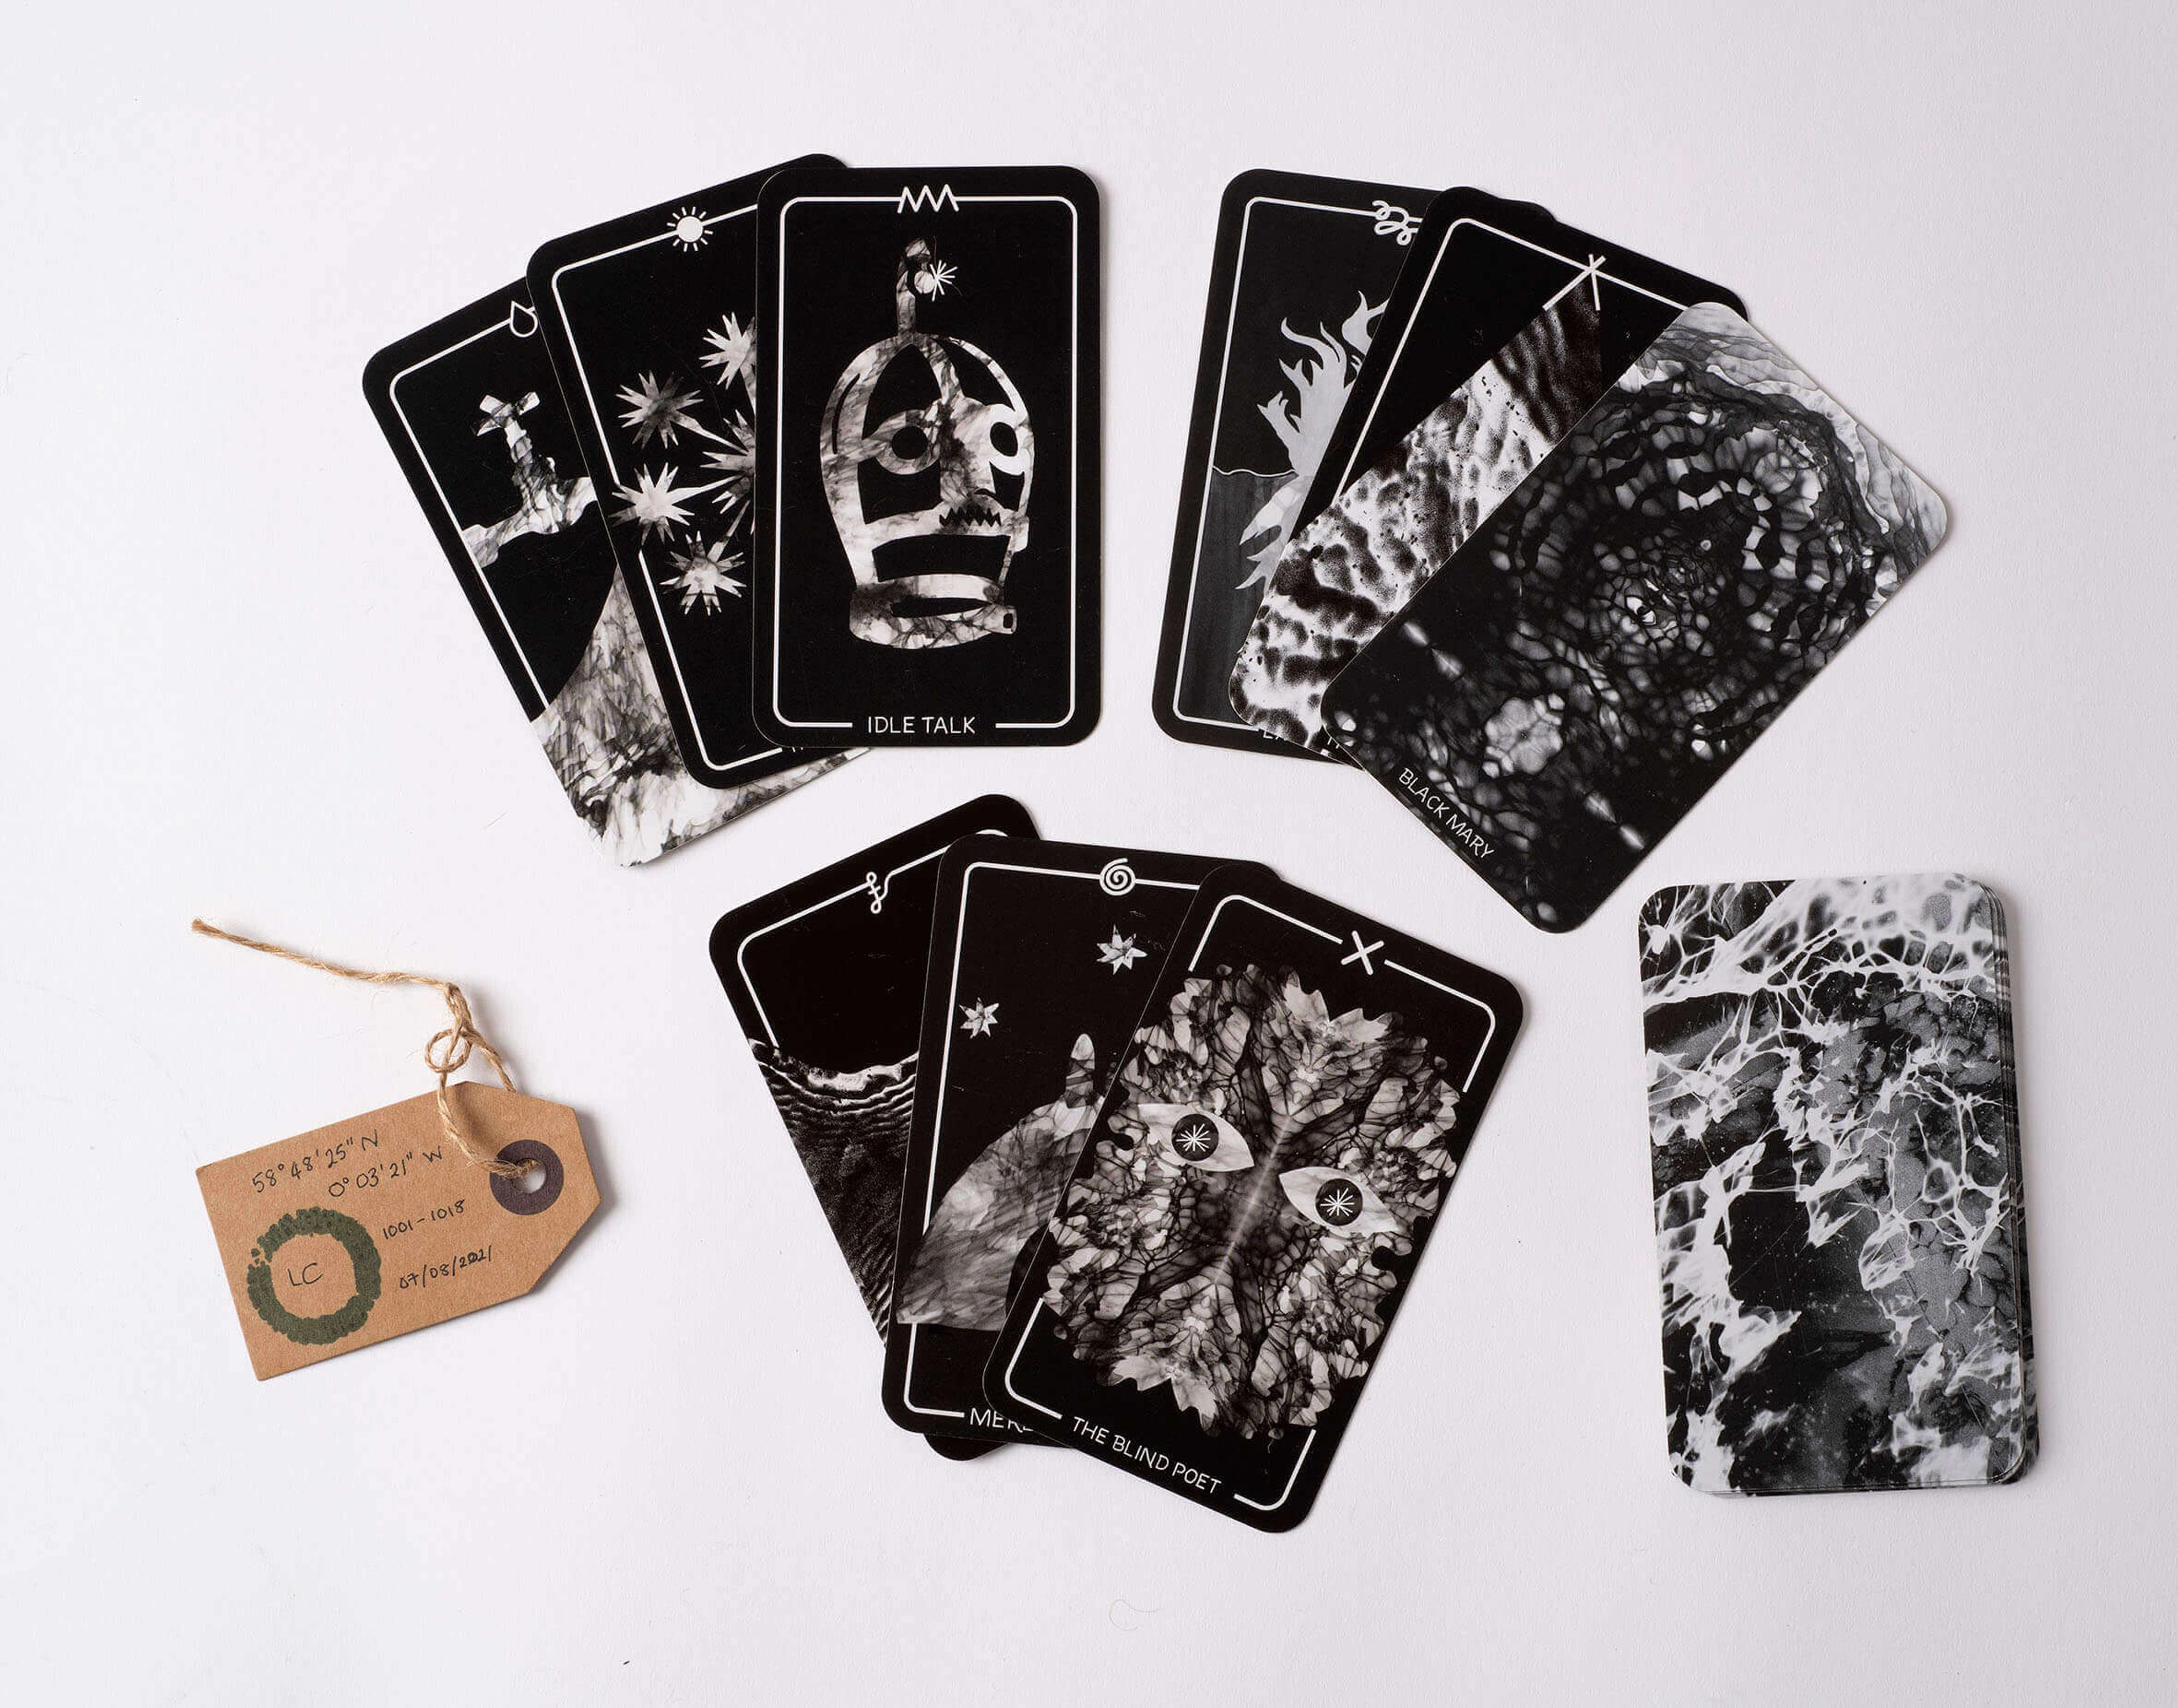 Photograph of various tarot cards.